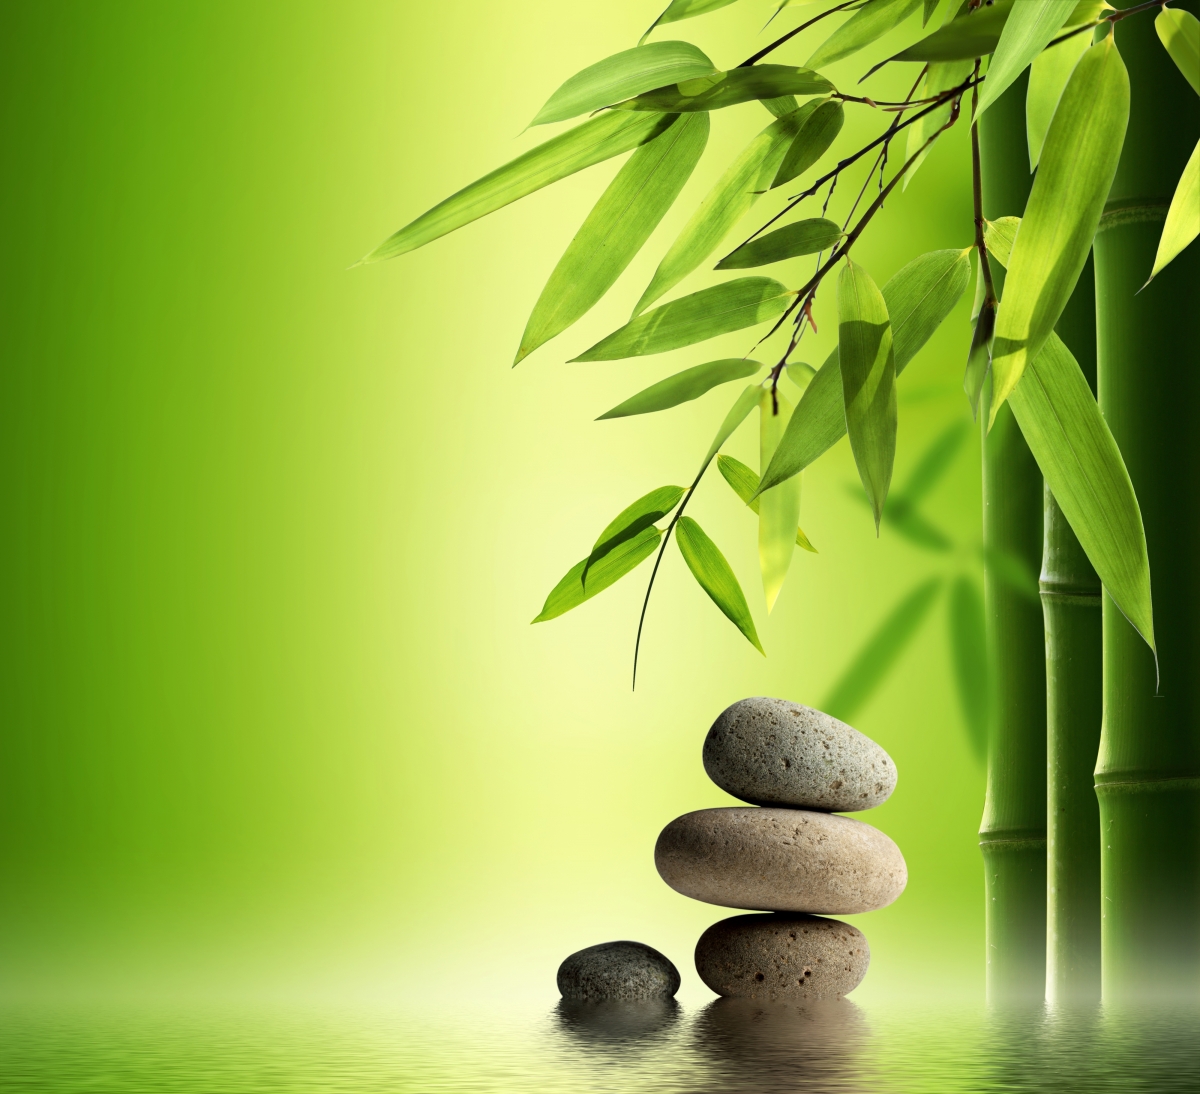 竹子,石头,水,绿色背景图片